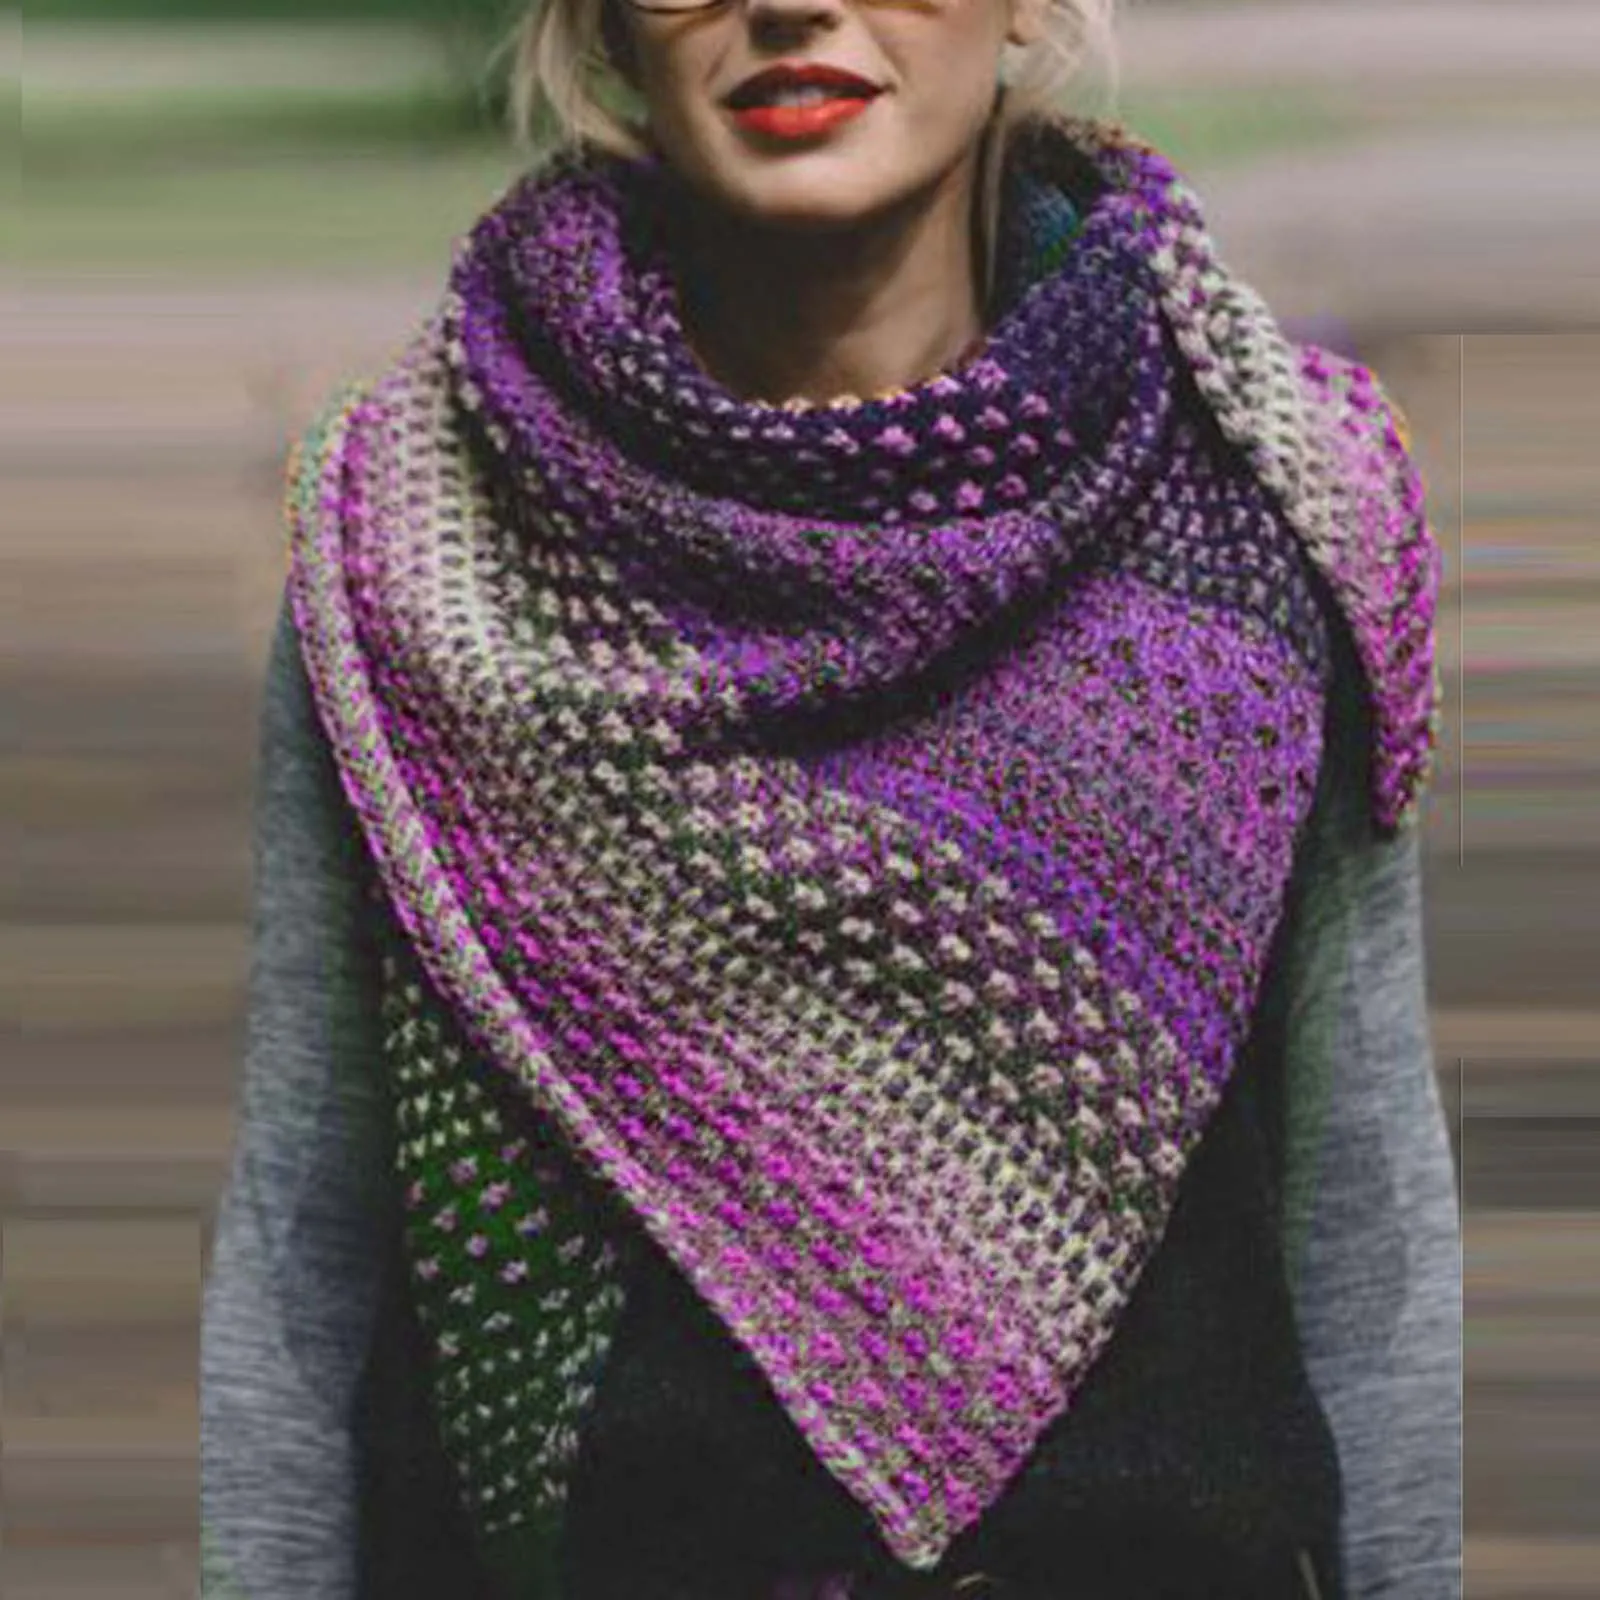 Las mujeres de Invierno Cálido Cara de Color Colorido Crochet Engrosamiento de punto Suave Chal Bufanda Vintage Otoño Plaid Bufanda Larga Chales шарф hiyab 2